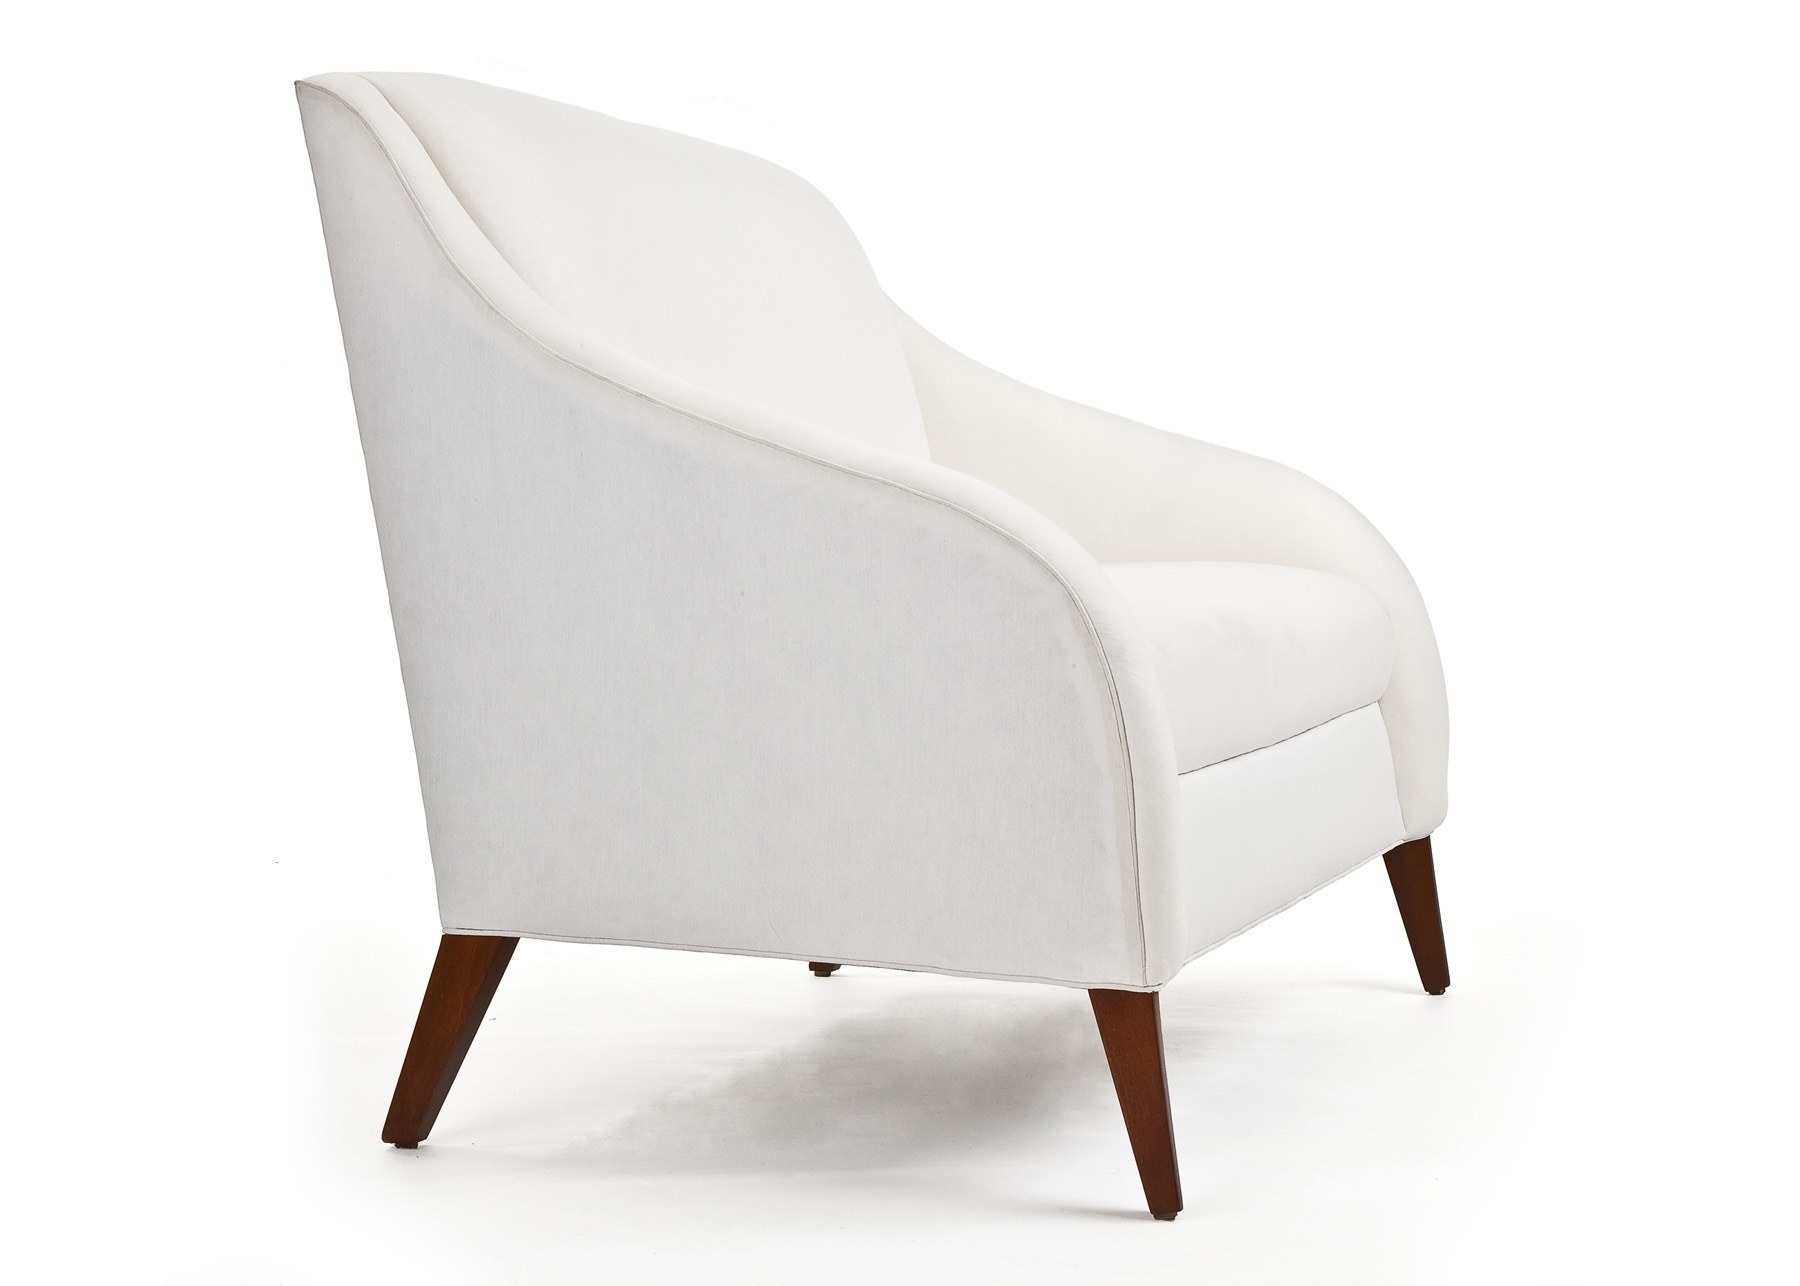 Cabot Wrenn Emerge Lounge Chair